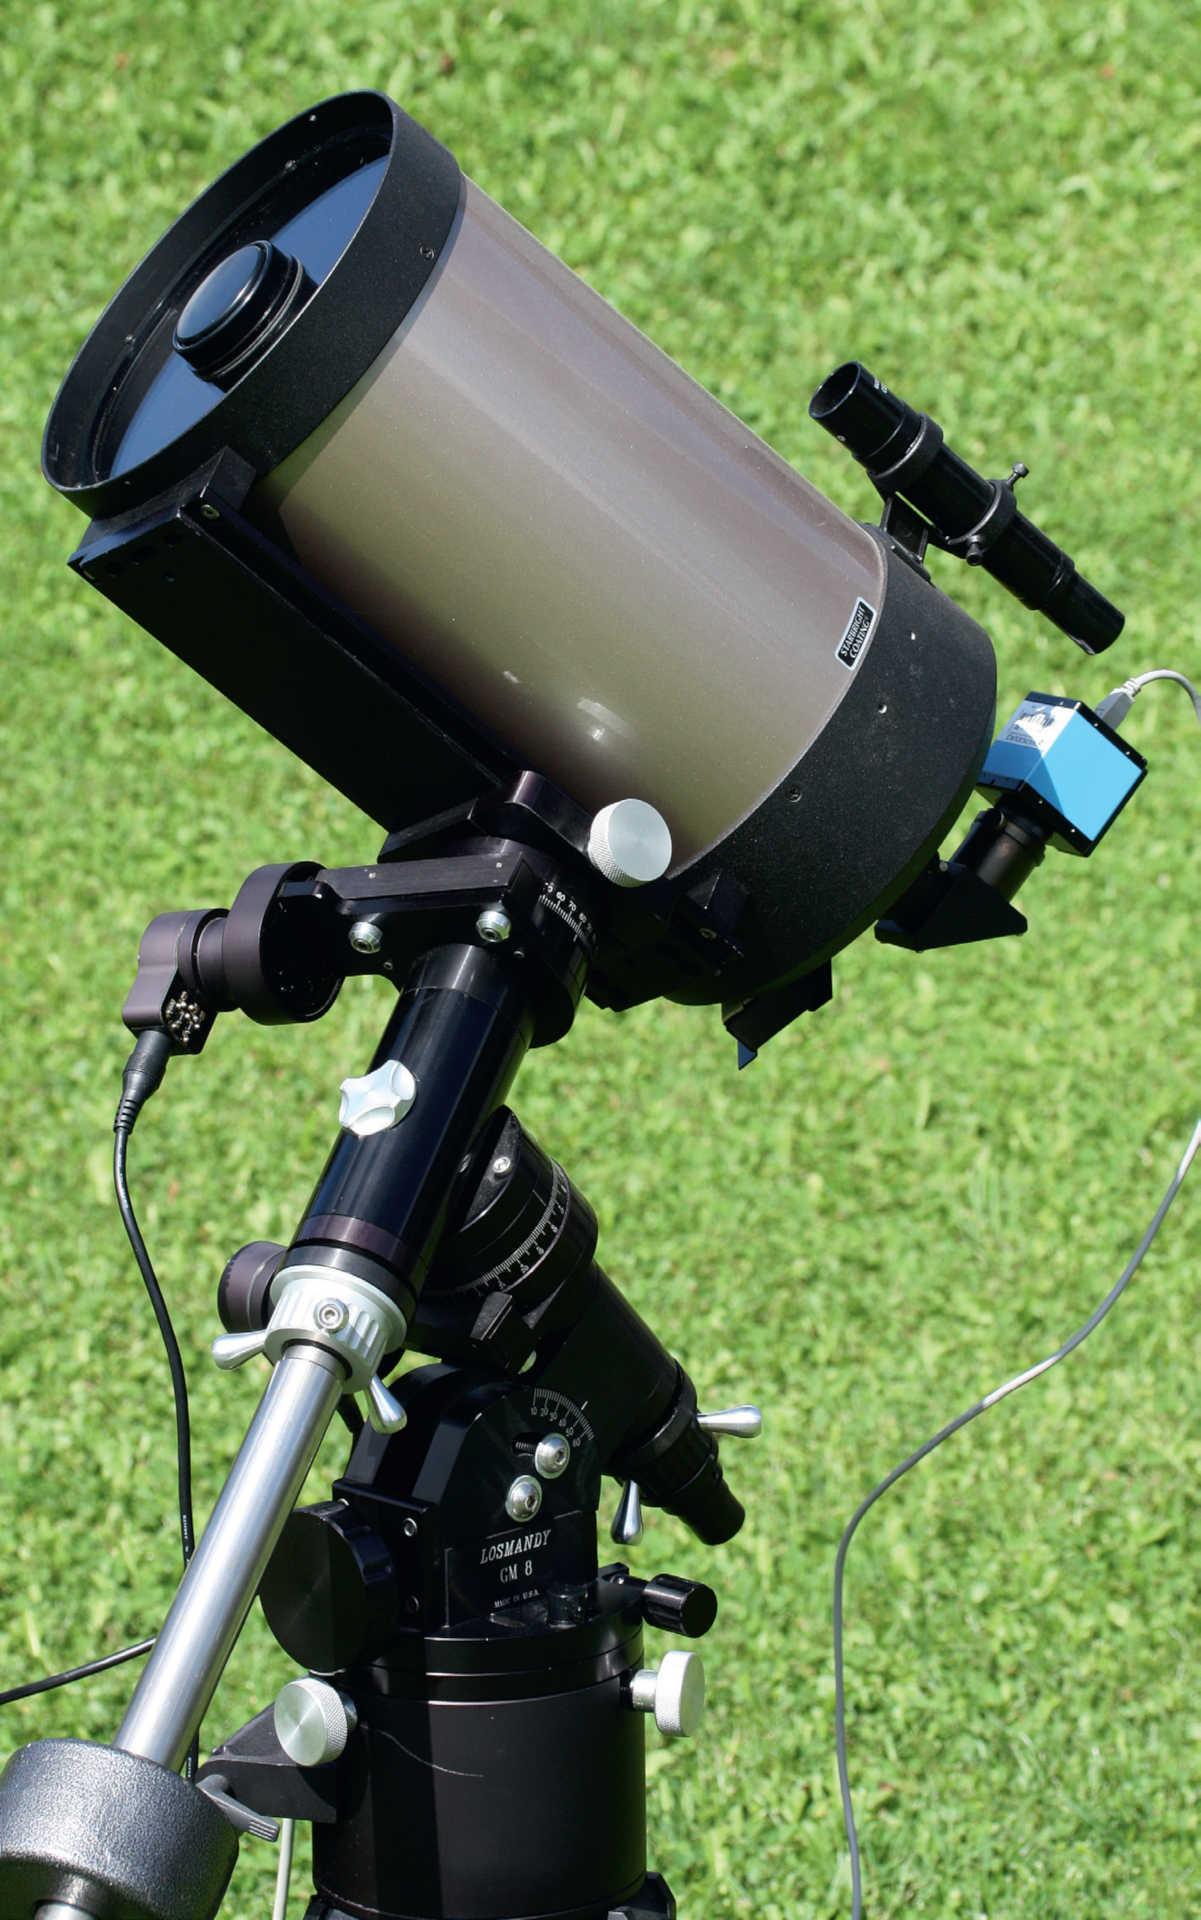 Ett Schmidt-Cassegrain-teleskop på en motorstyrd montering (här ett SCT av typen Celestron C8 på en Losmandy GM8-montering), används ofta av den som precis kommit igång med månfotografering. För bildtagningen används en okyld CCD-kamera från The Imaging Source. U. Dittler